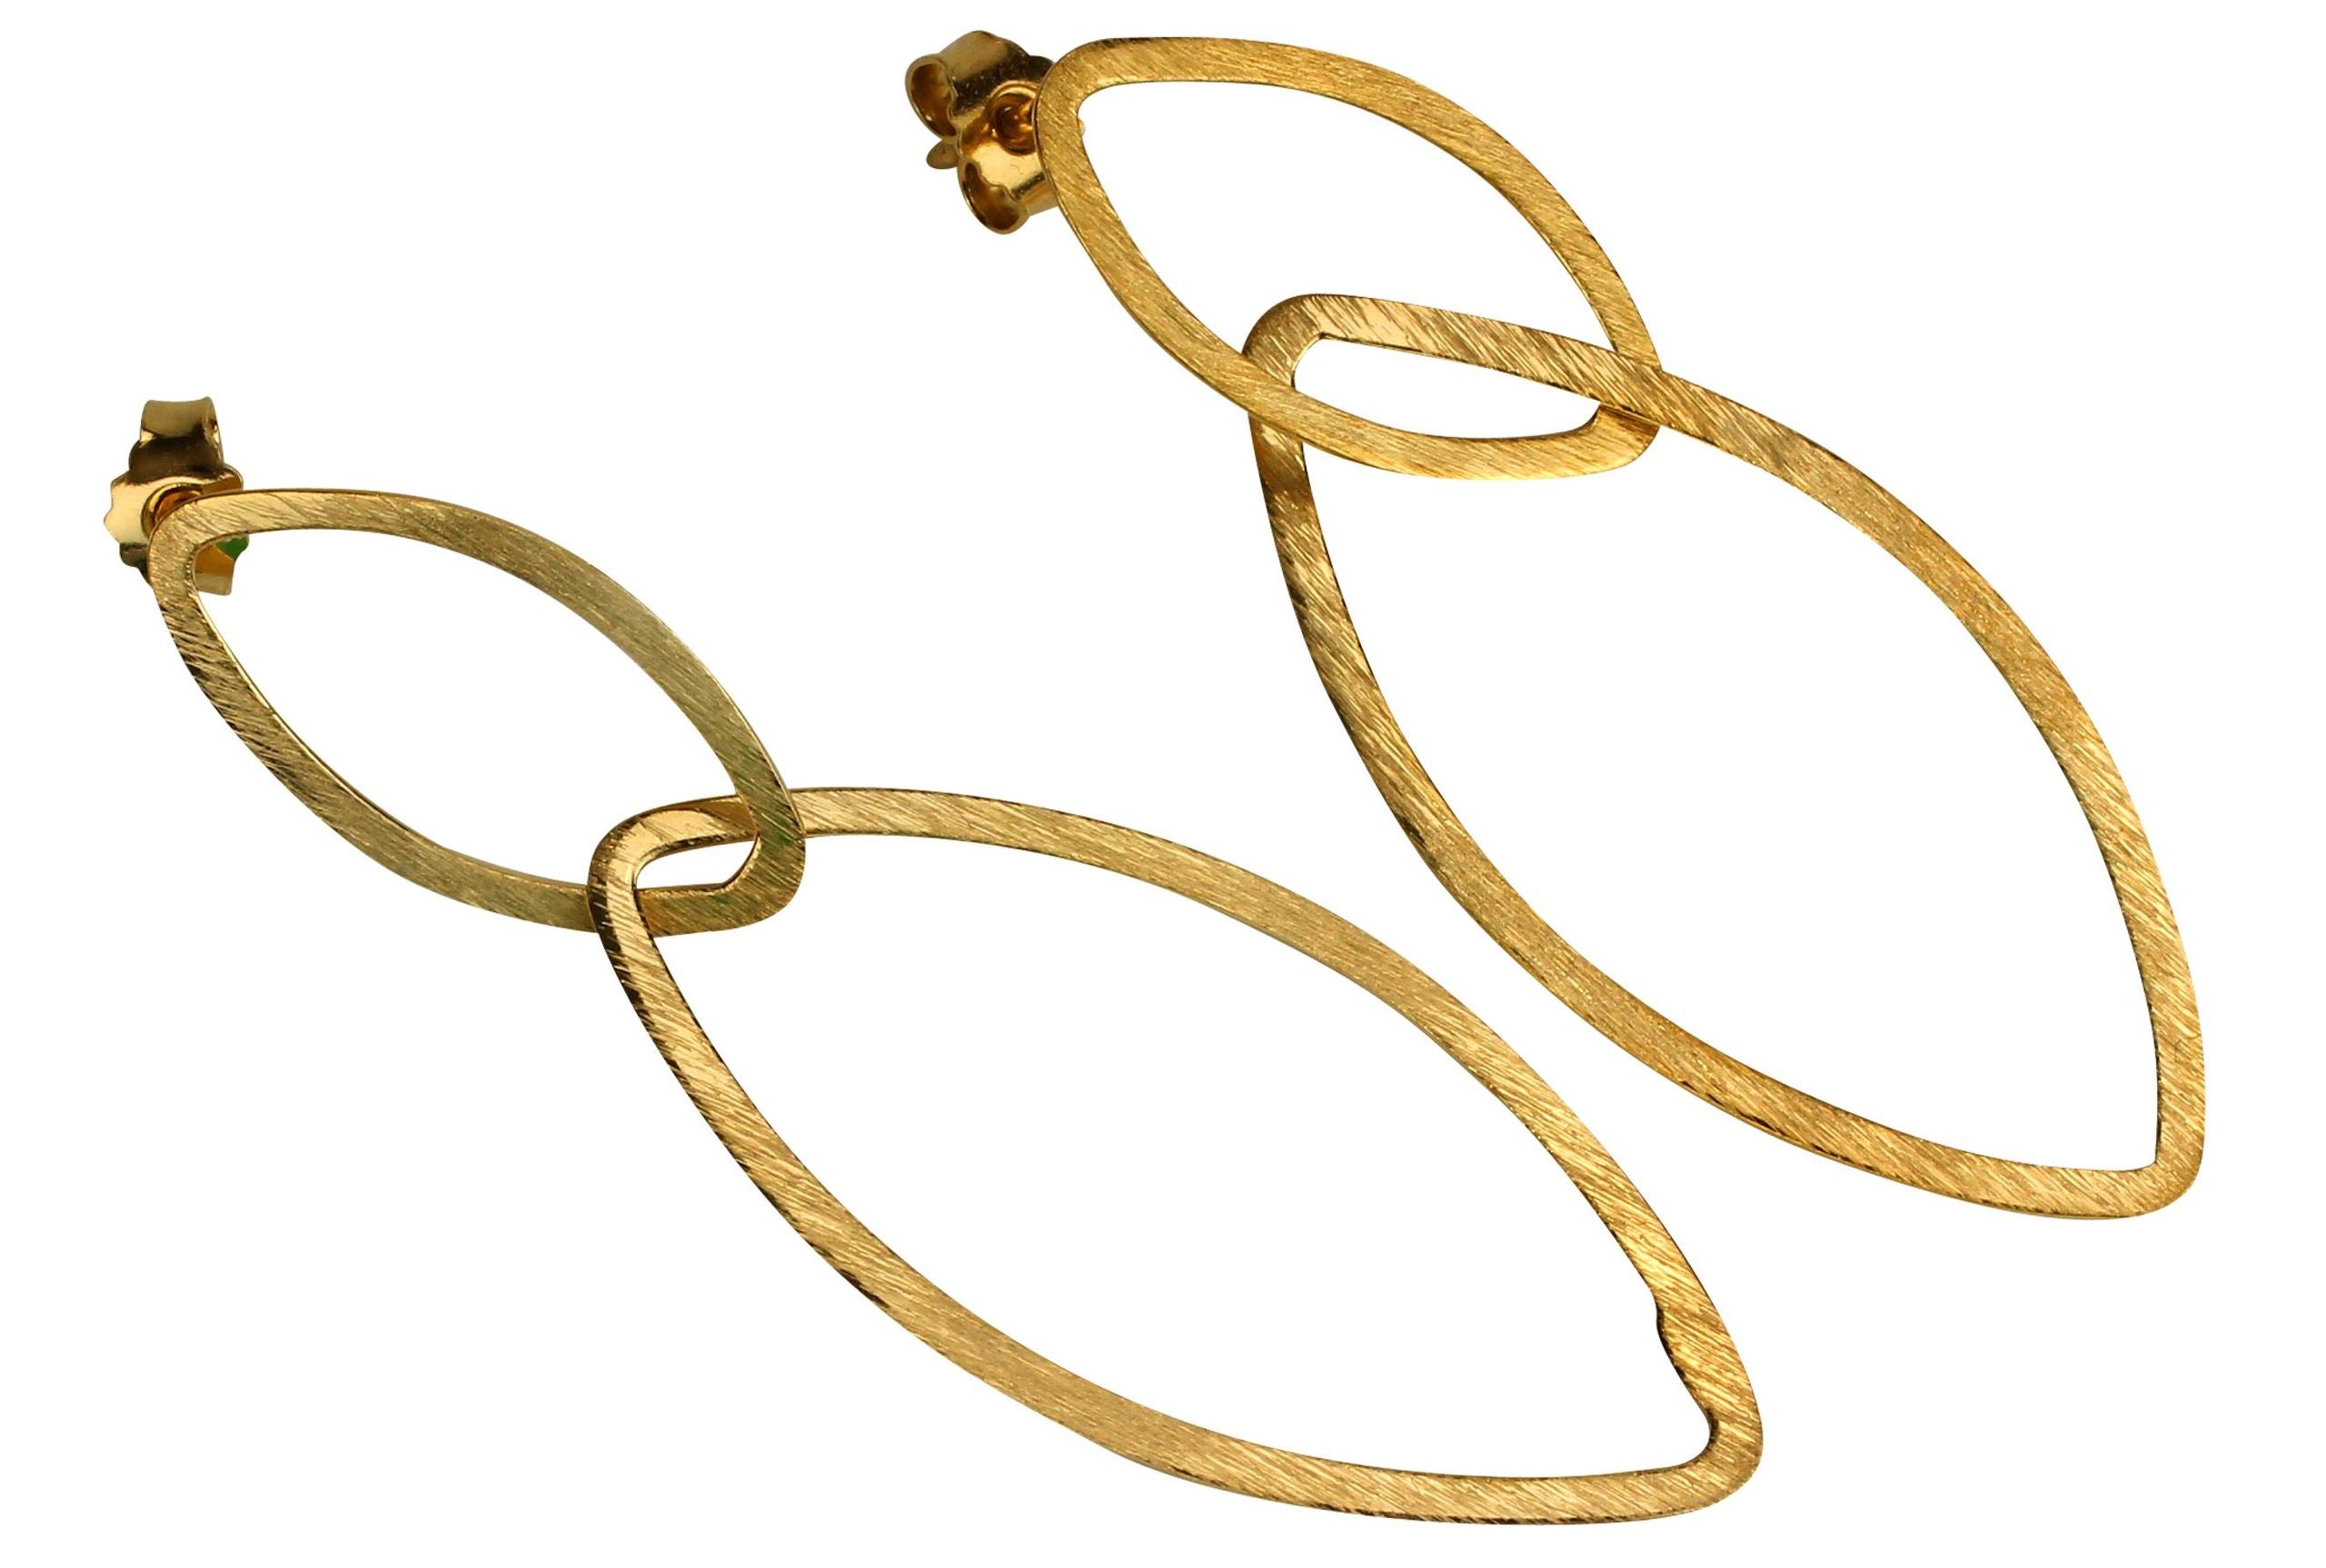 Ein Paar geschmiedete Ohrhänger aus vergoldetem Silber in Navetteform.